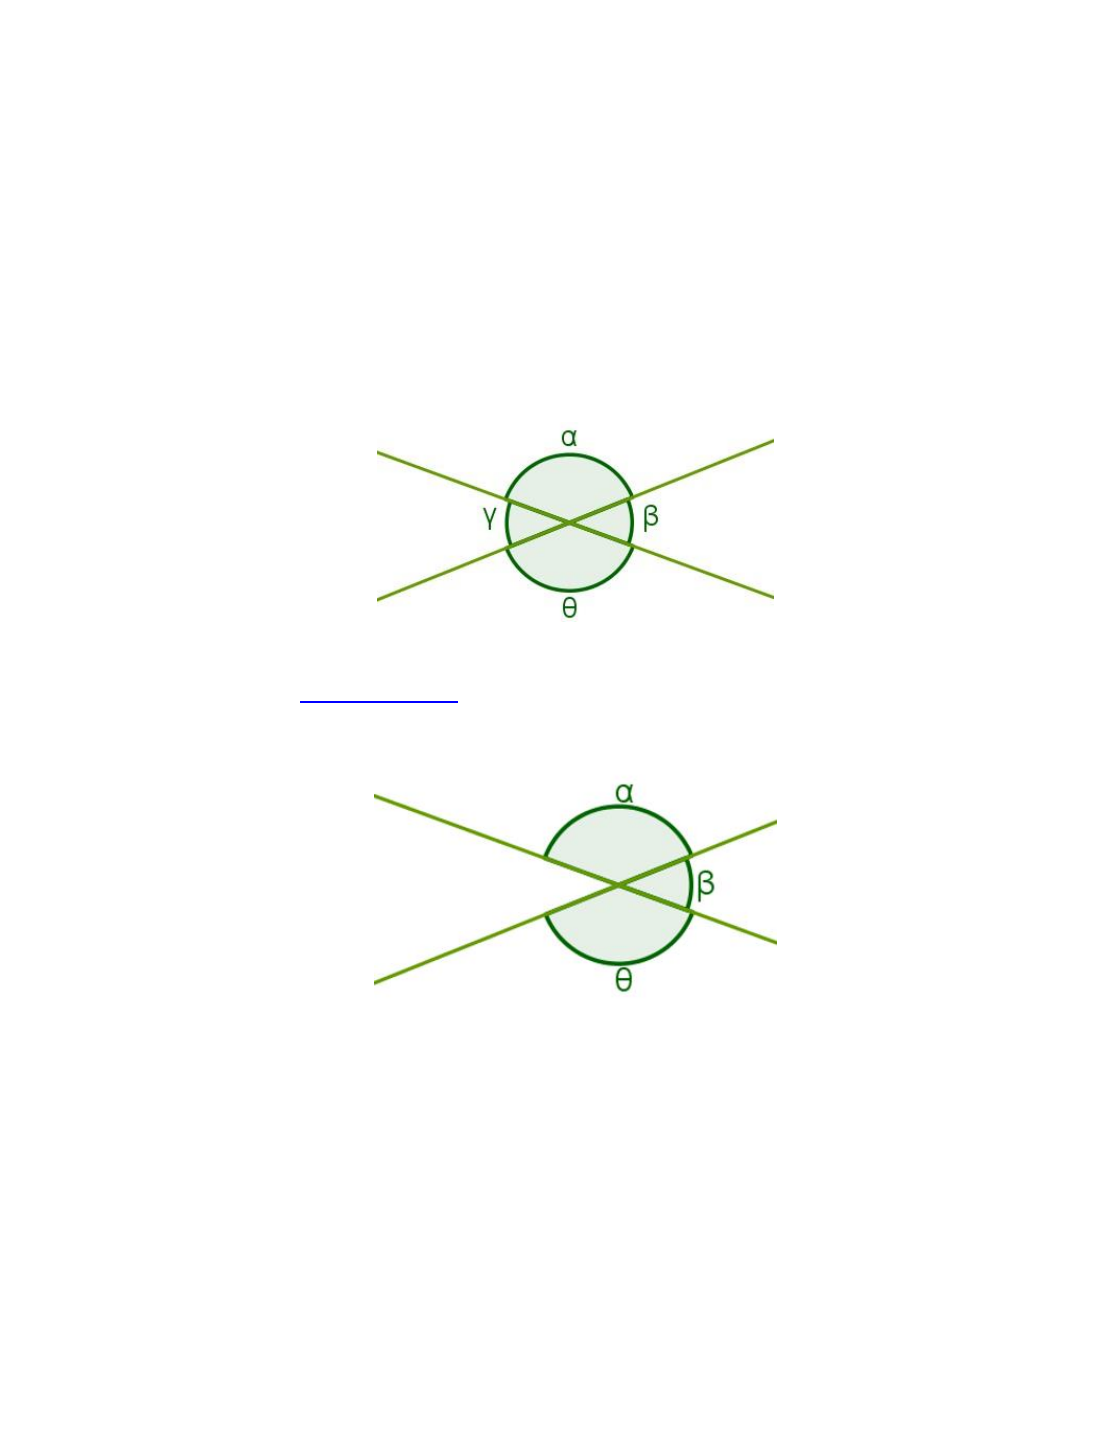 Ângulos complementares, suplementares, verticais e adjacentes